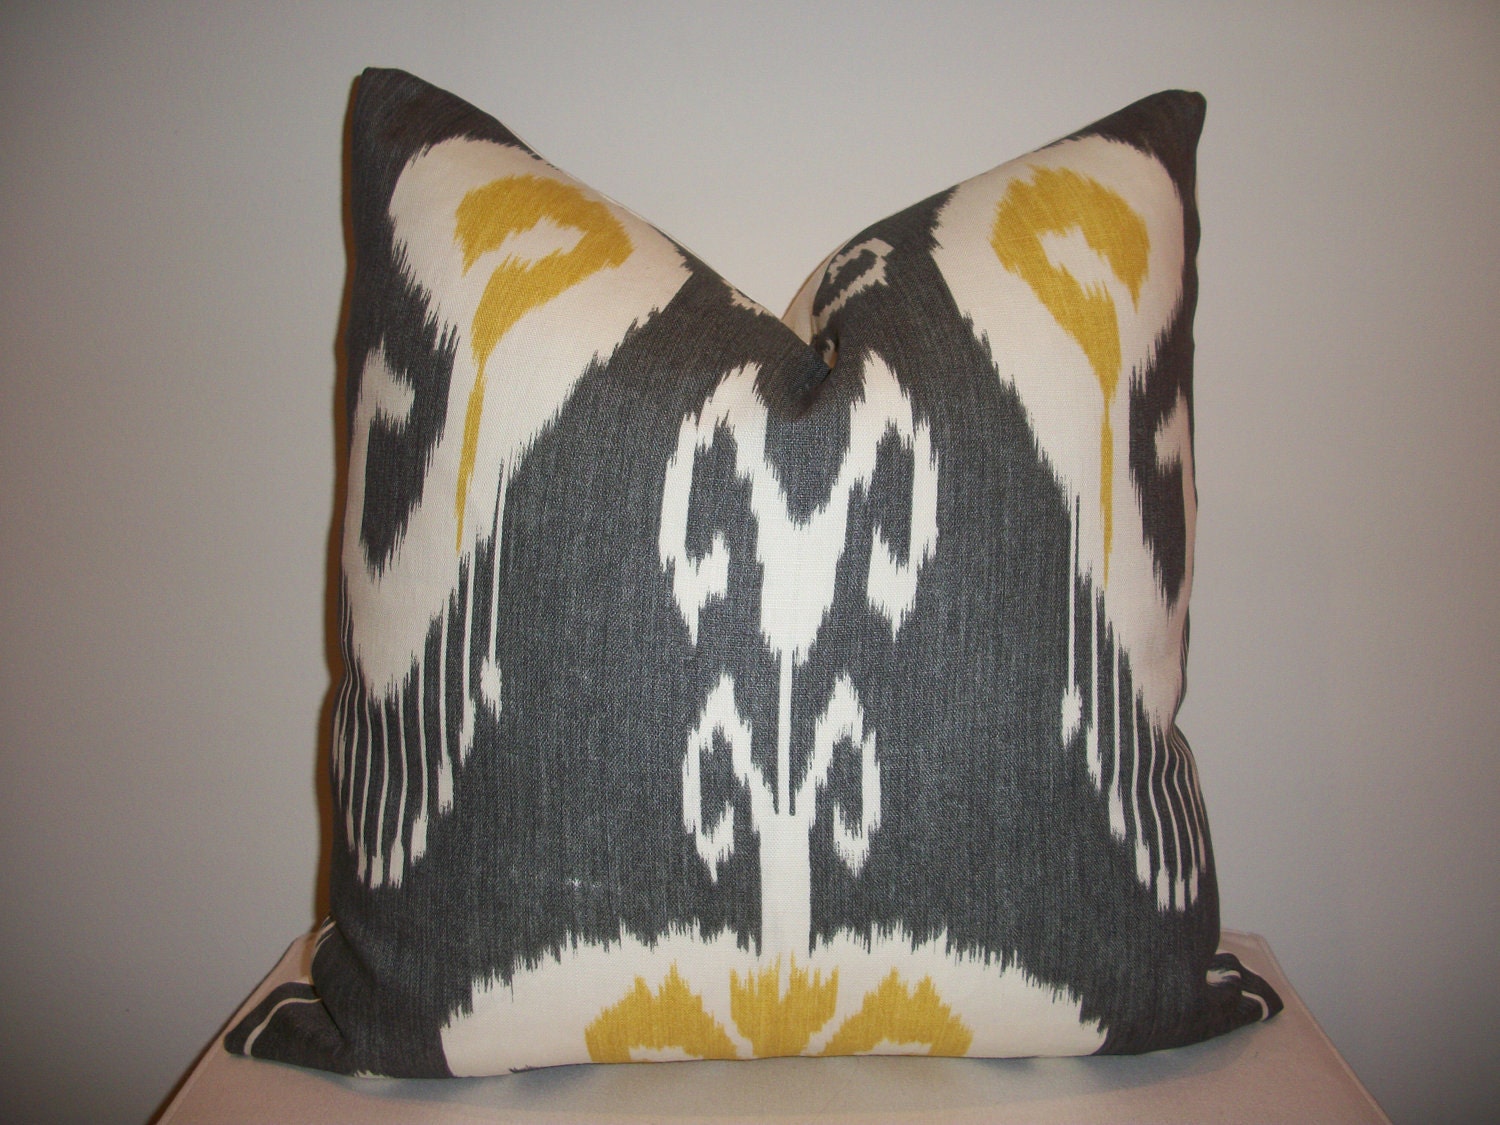 18 x 18 Grey and Yellow Ikat "Bansuri" Designer Pillow Cover - Decorative Throw Pillow